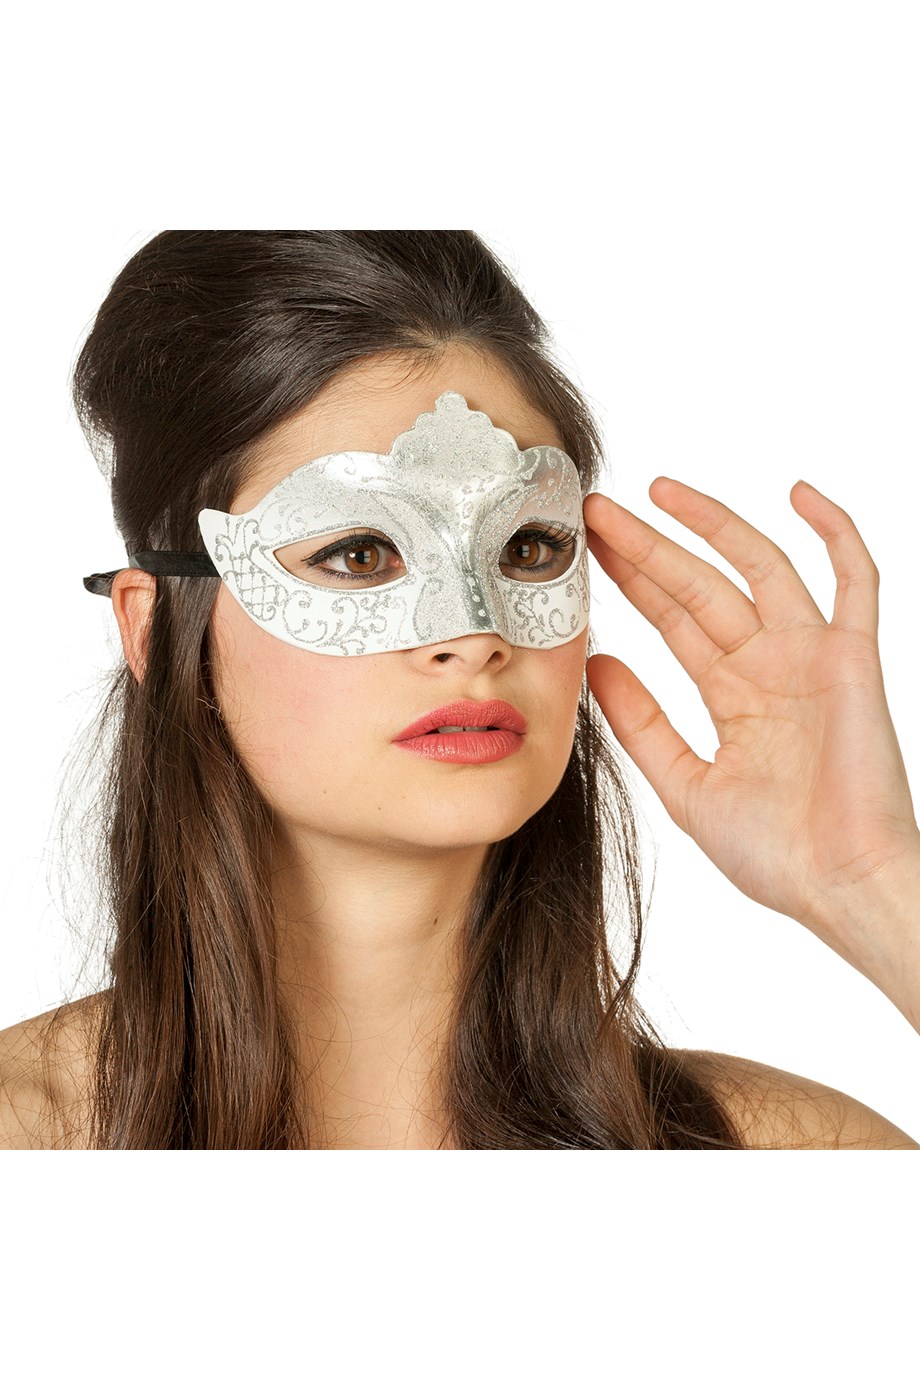 verkoop - attributen - Nieuwjaar - Venetiaans masker zilver glitter